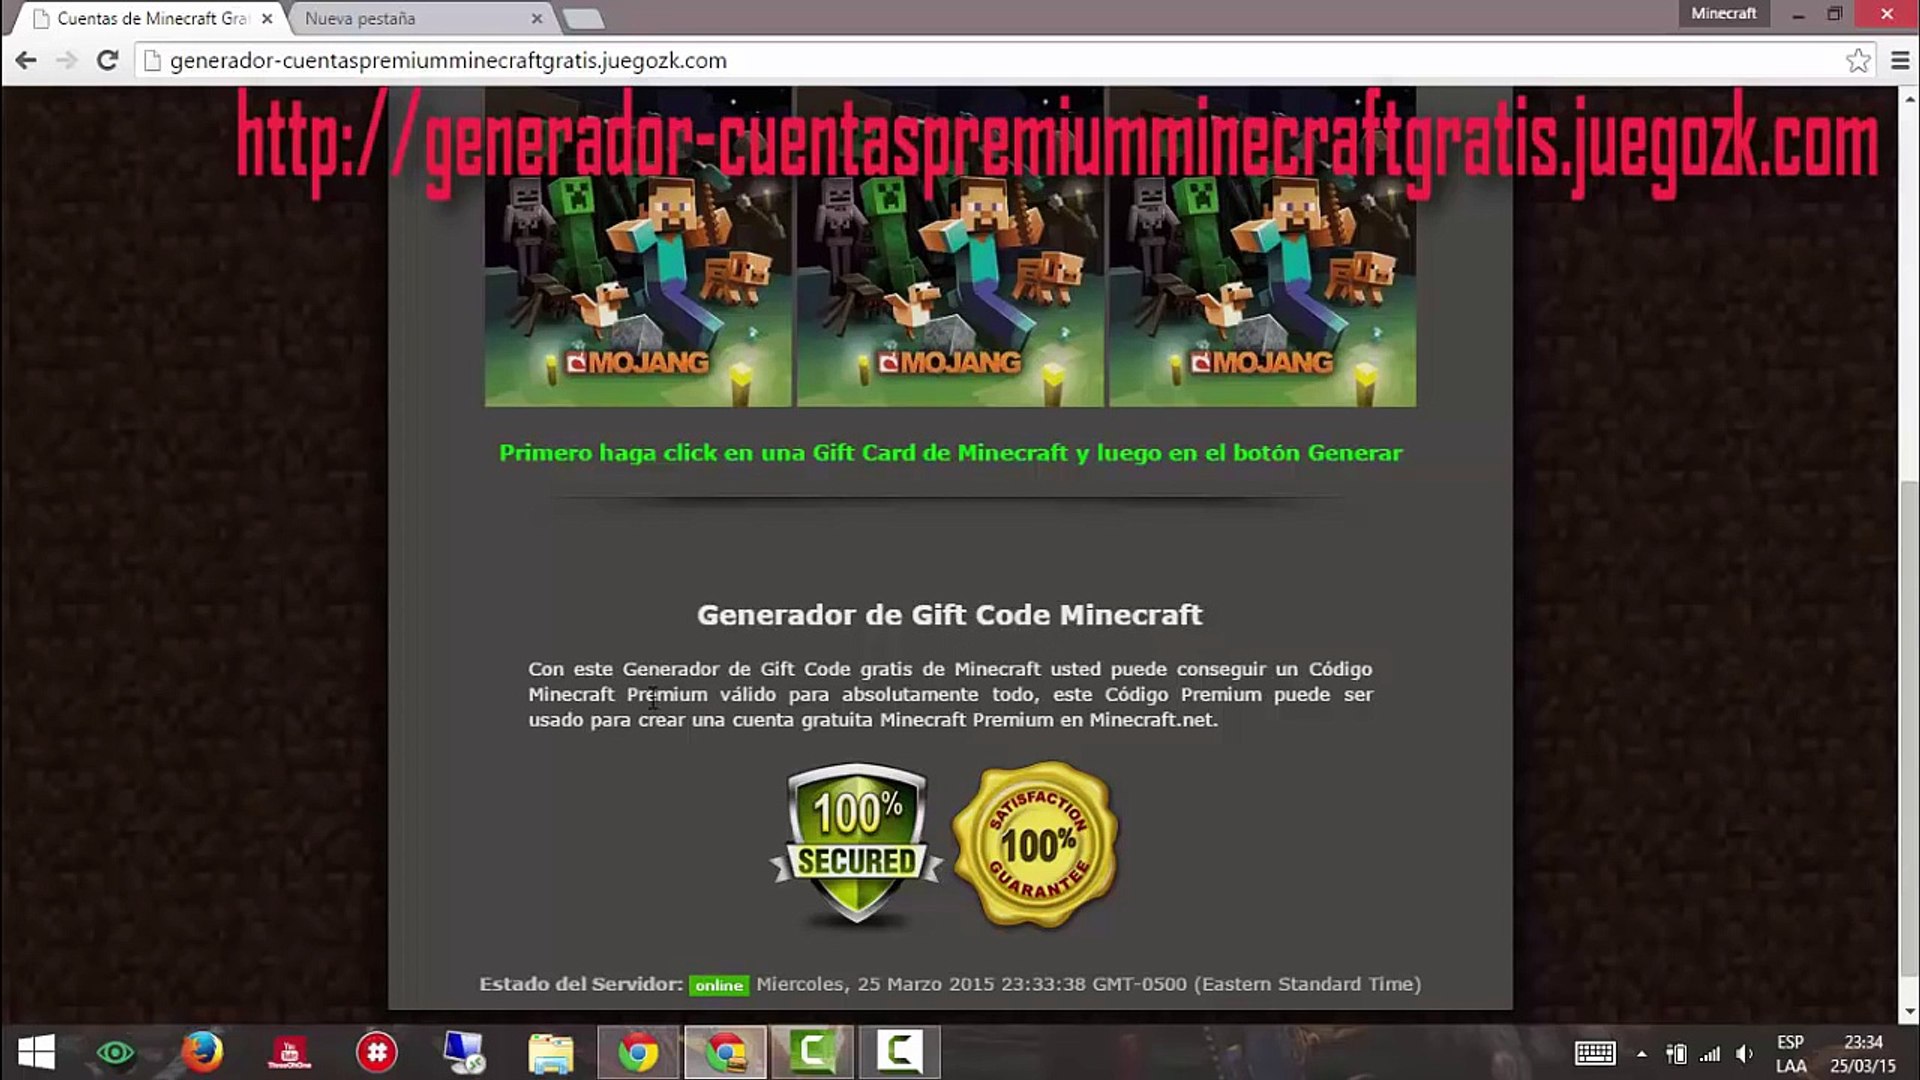 Generador De Cuentas Premium De Minecraft 2015 Junio Video